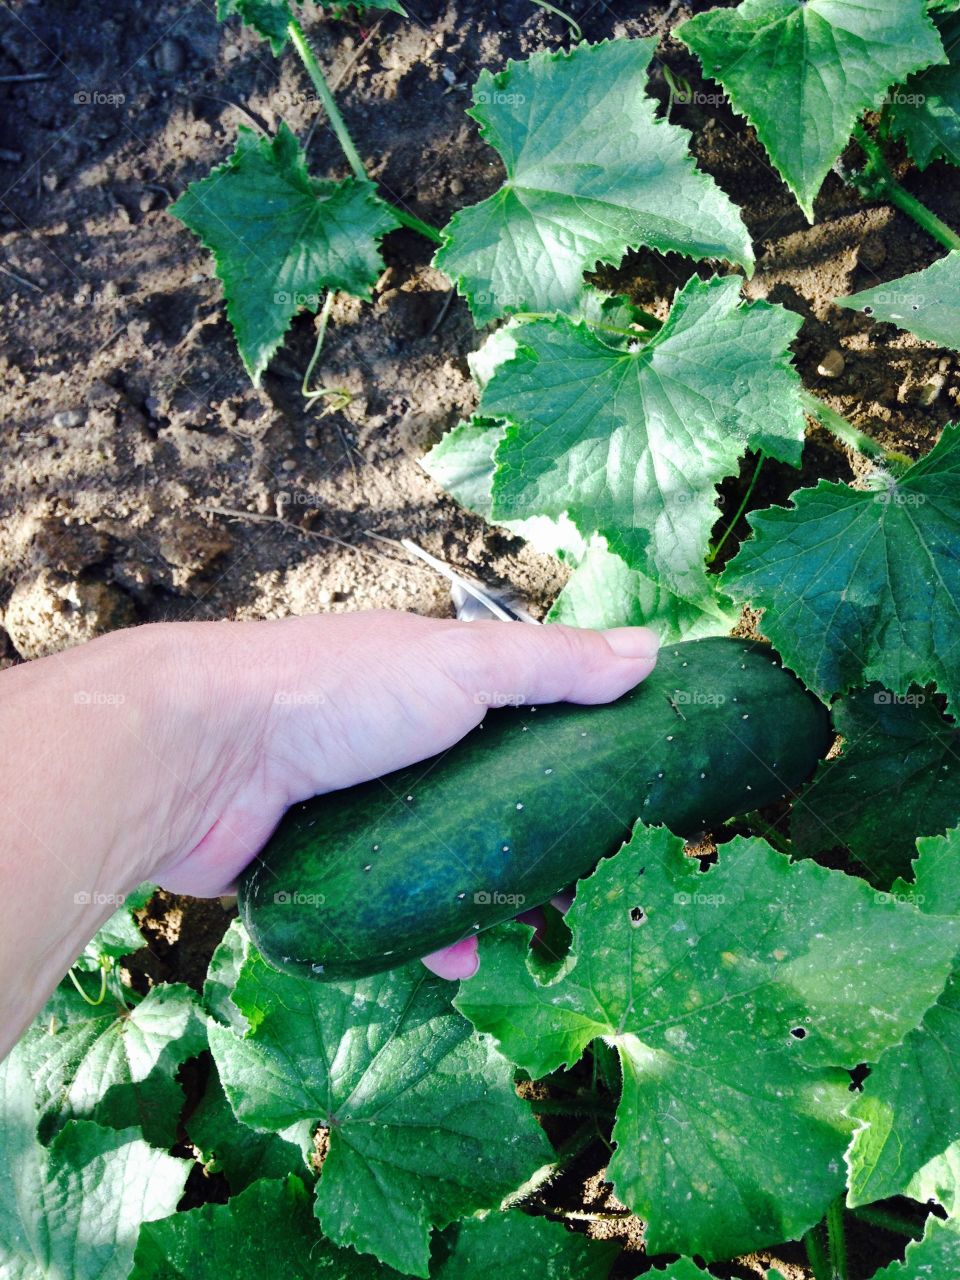 Picking cucumber s  in my garden 